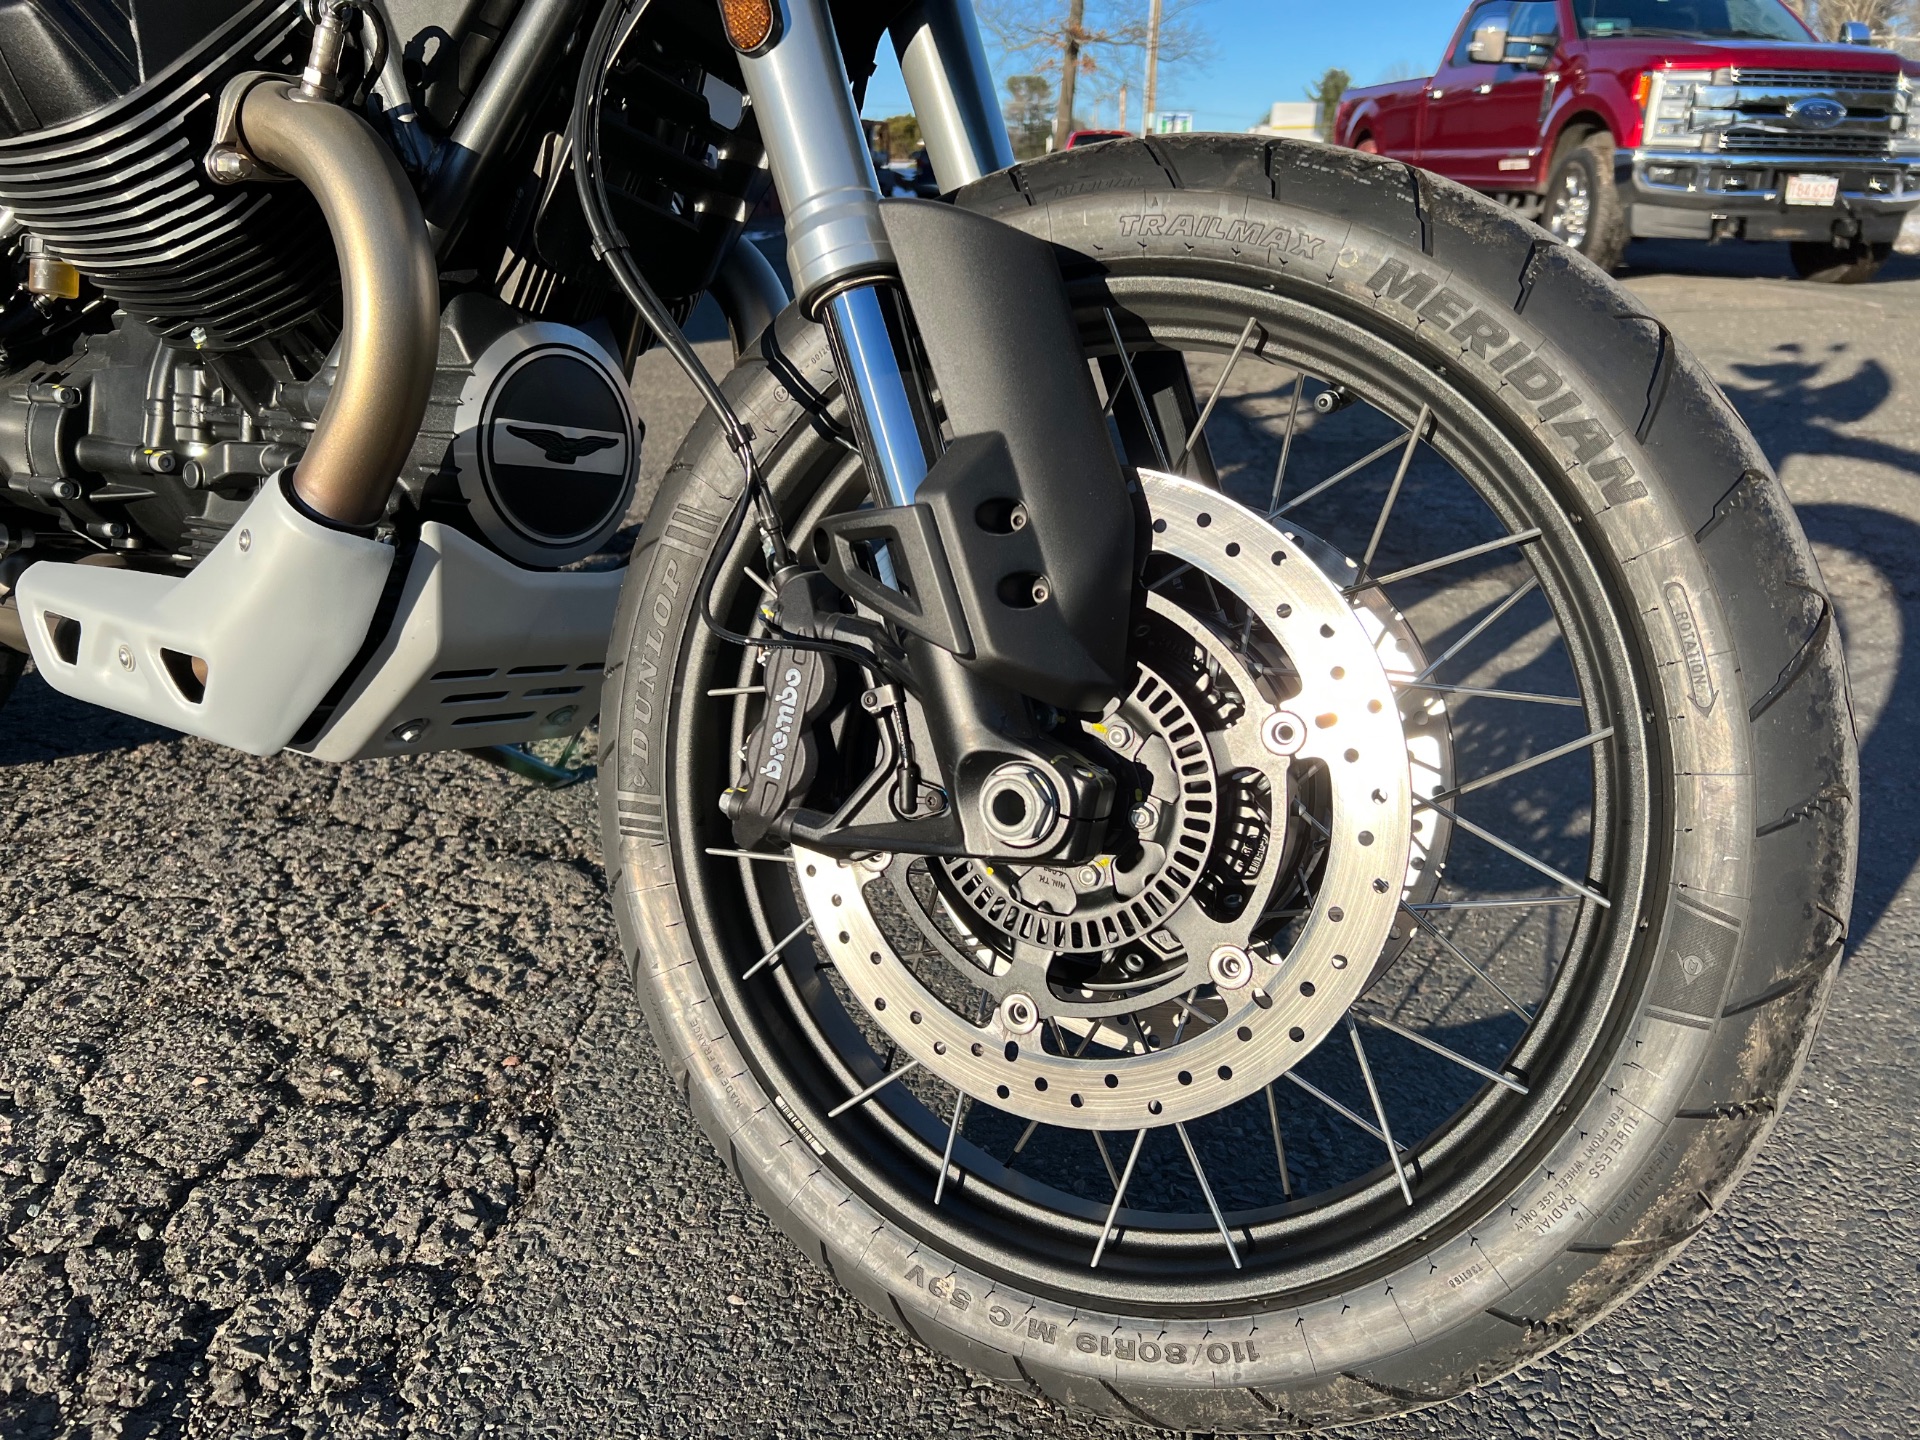 2022 Moto Guzzi V85 TT in Westfield, Massachusetts - Photo 4